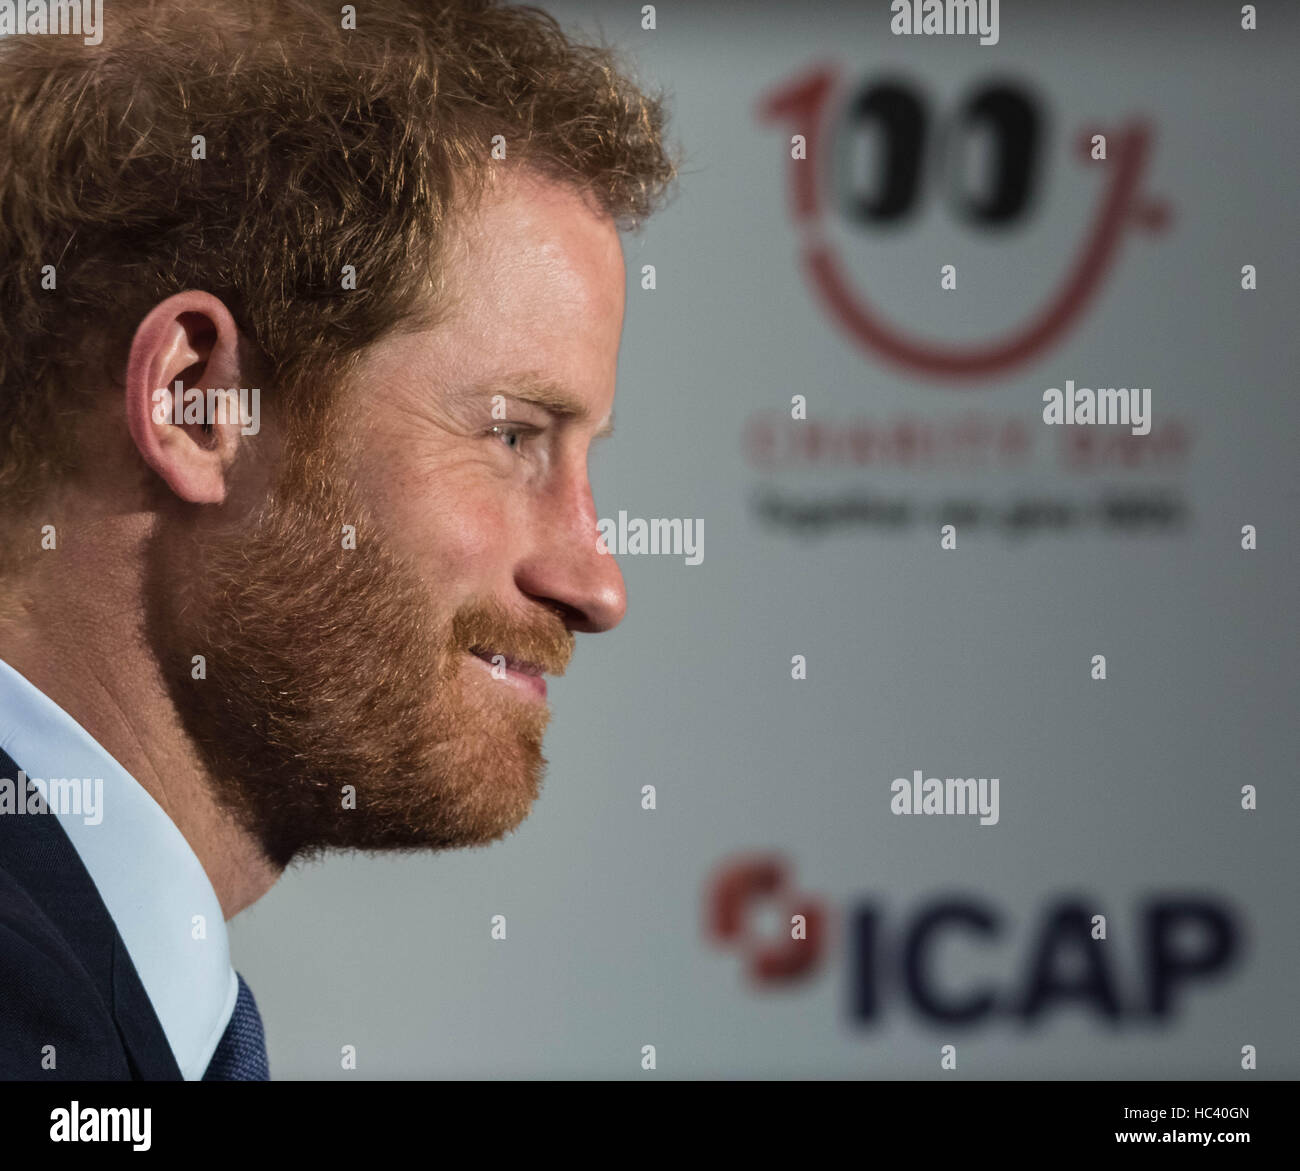 Londra, Regno Unito. 7 dicembre, 2016. Il principe Harry arriva a frequentare XXIV ICAP carità globale di credito giorno: Guy Corbishley/Alamy Live News Foto Stock